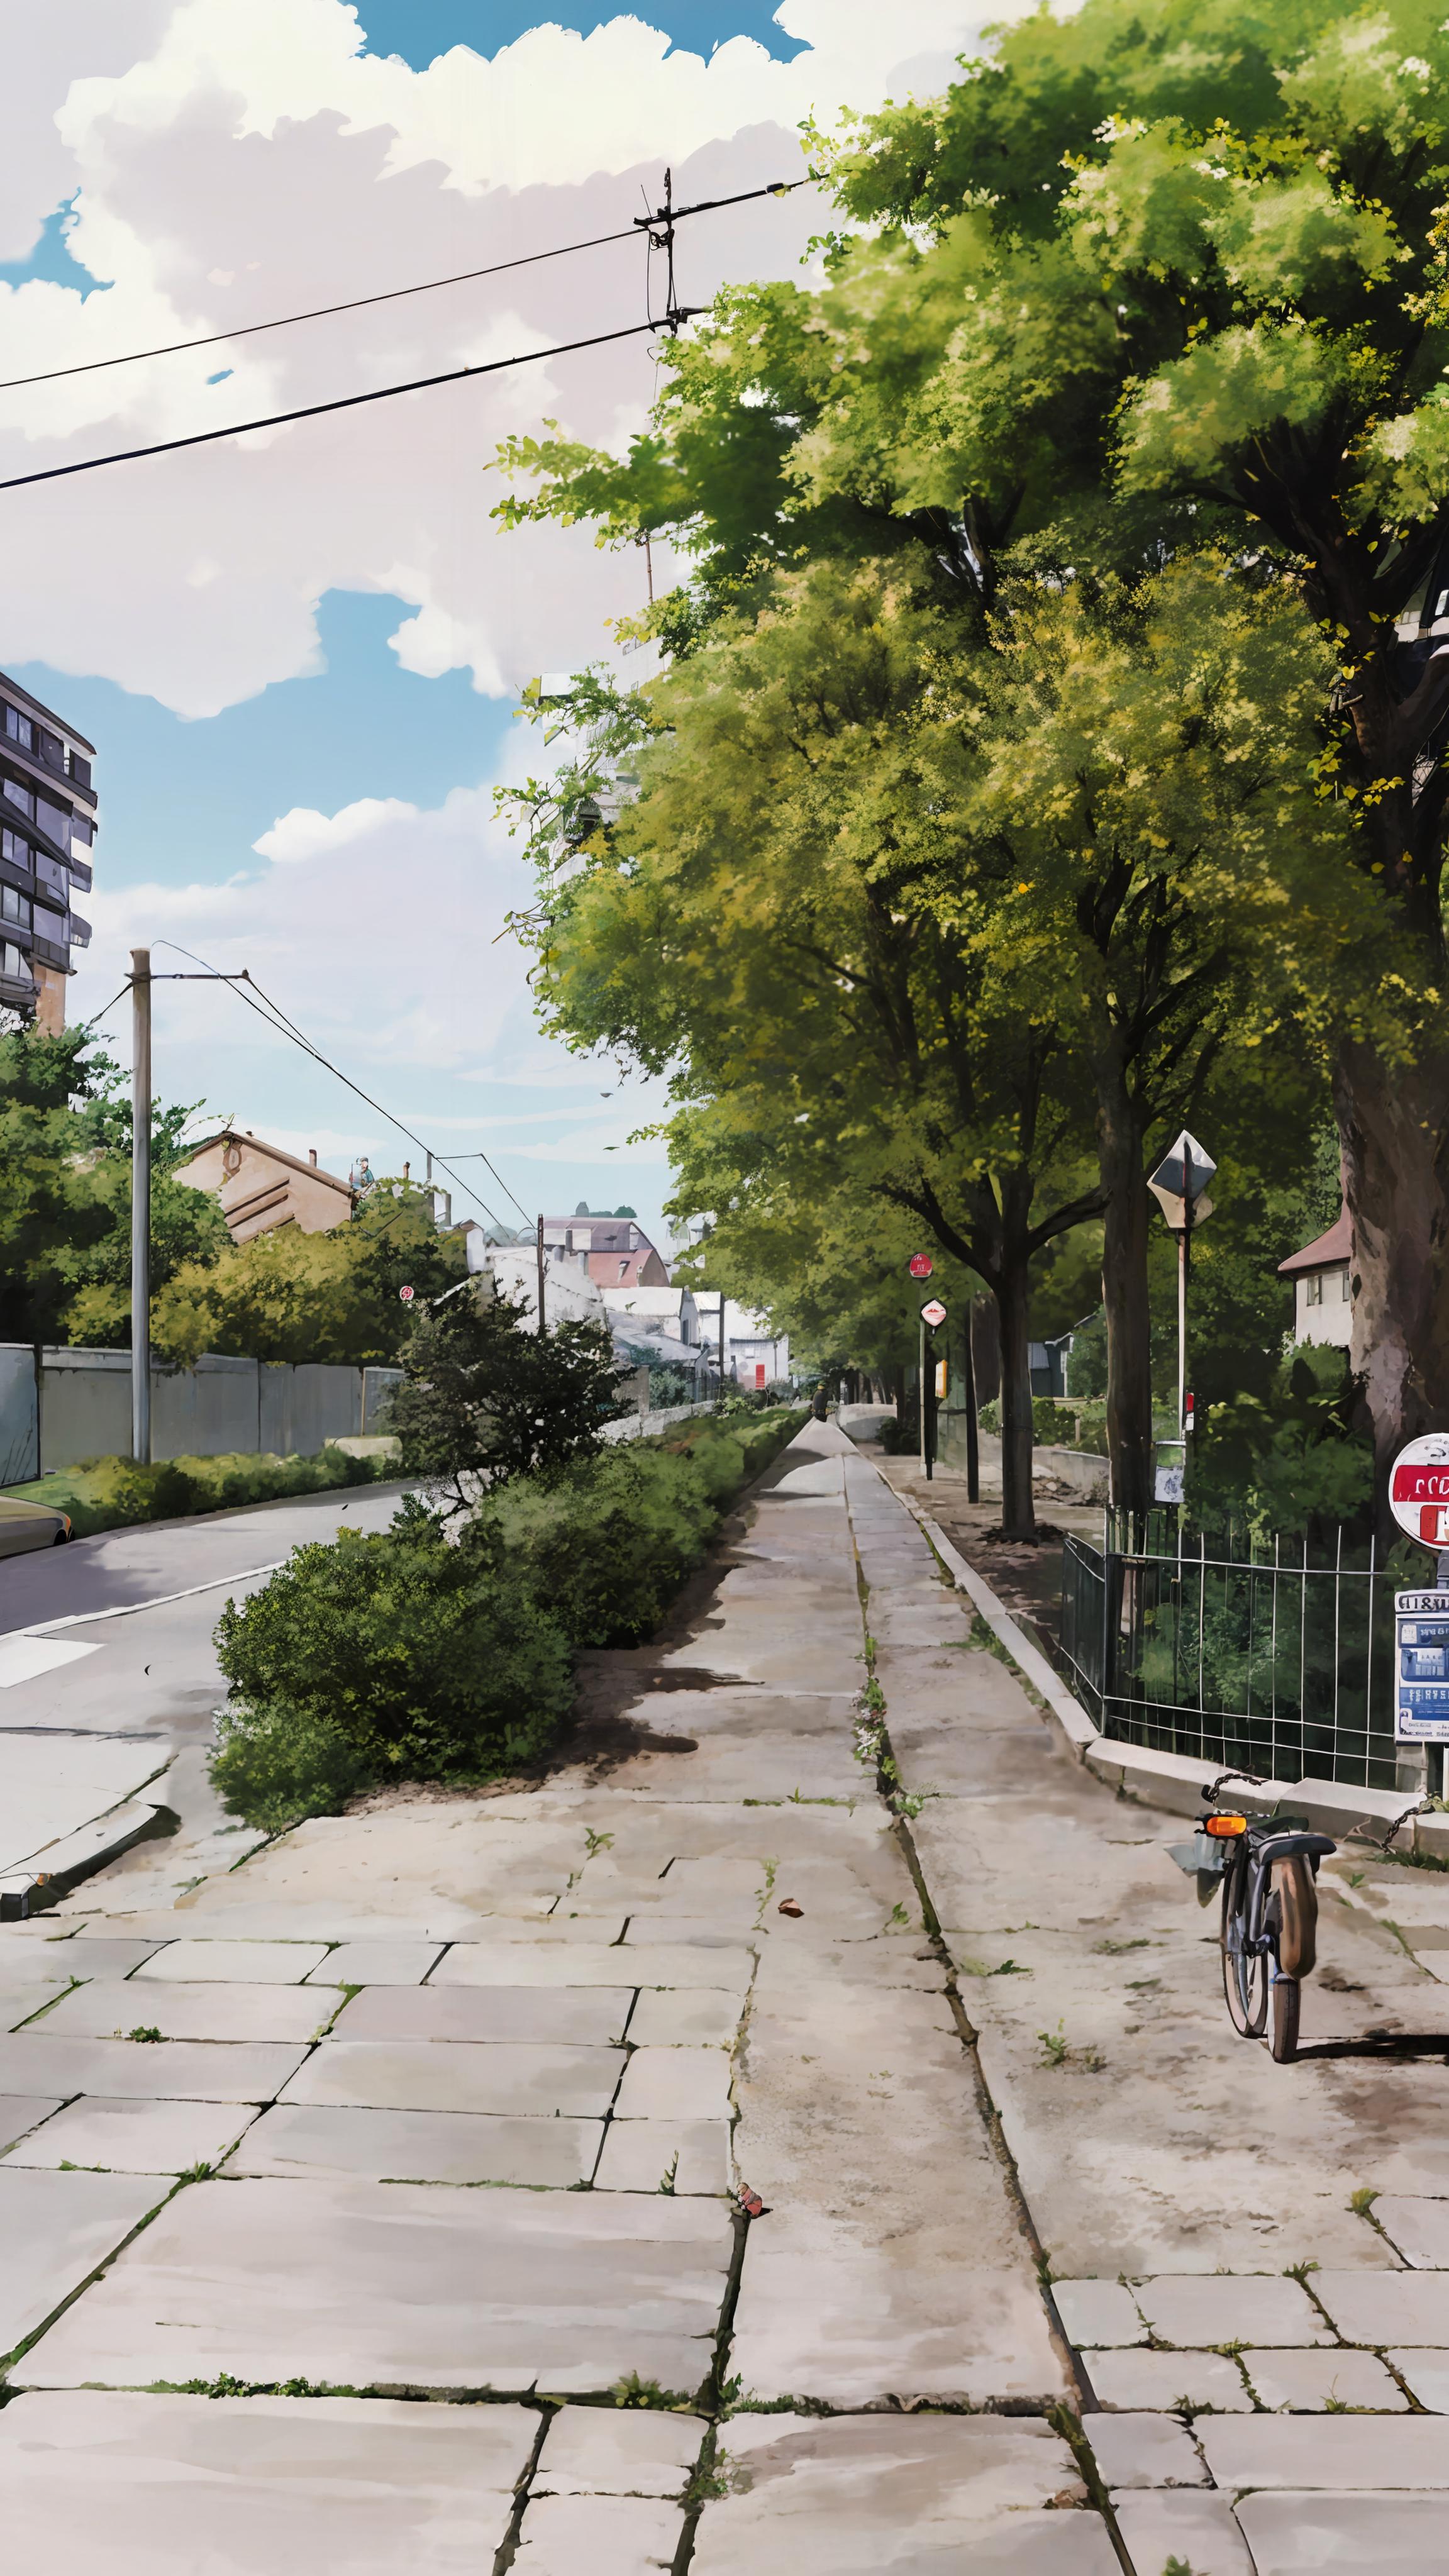 Studio Ghibli Style LoRA image by hewenhan